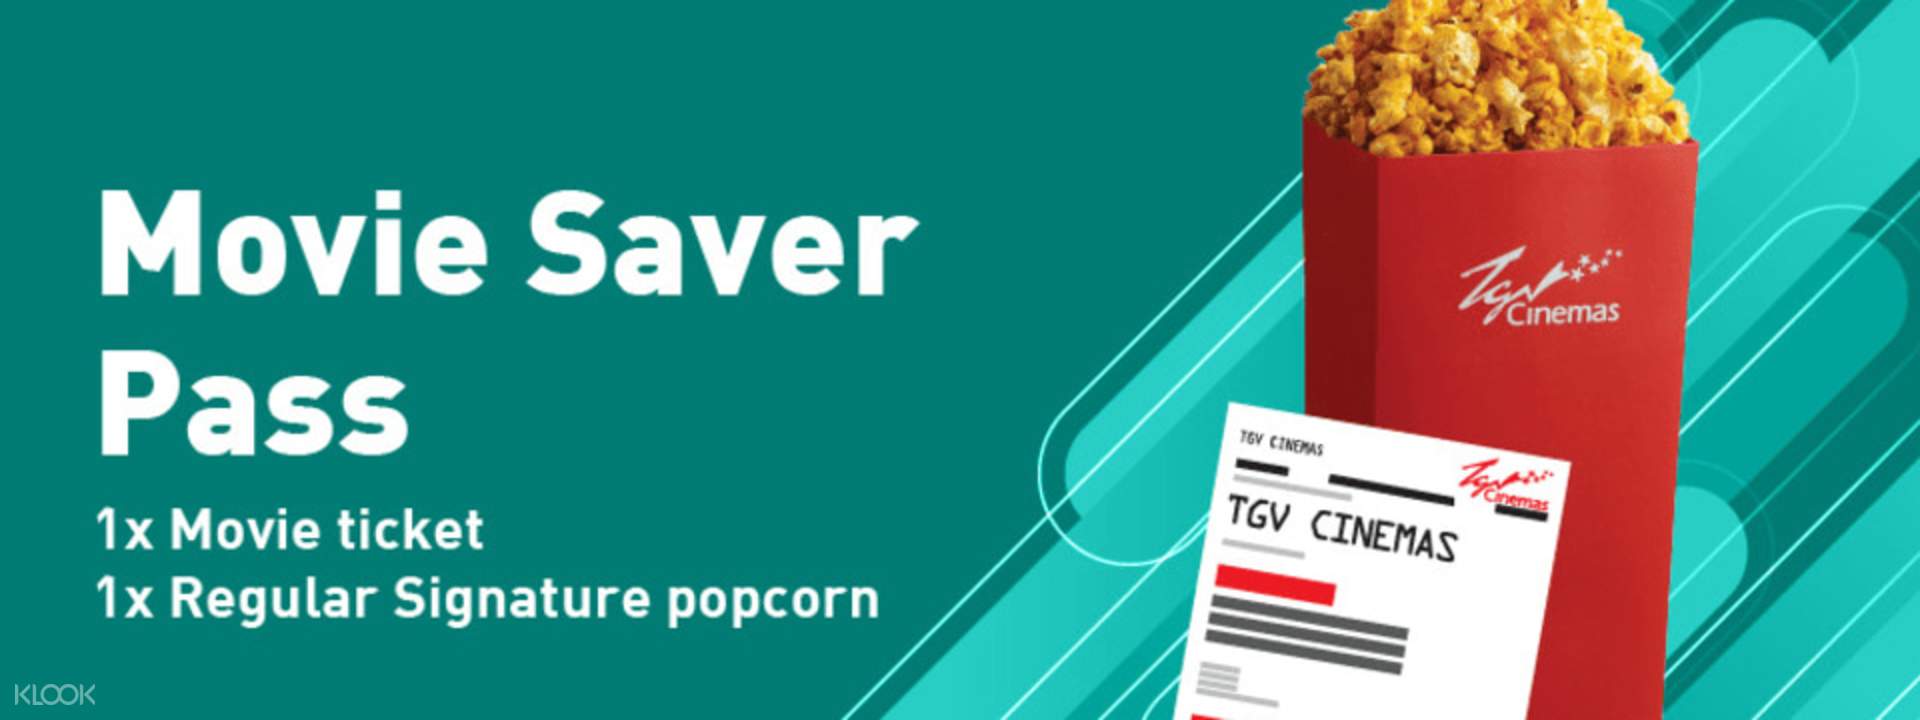 TGV Cinemas Access - Movie Saver Pass - Klook Malaysia